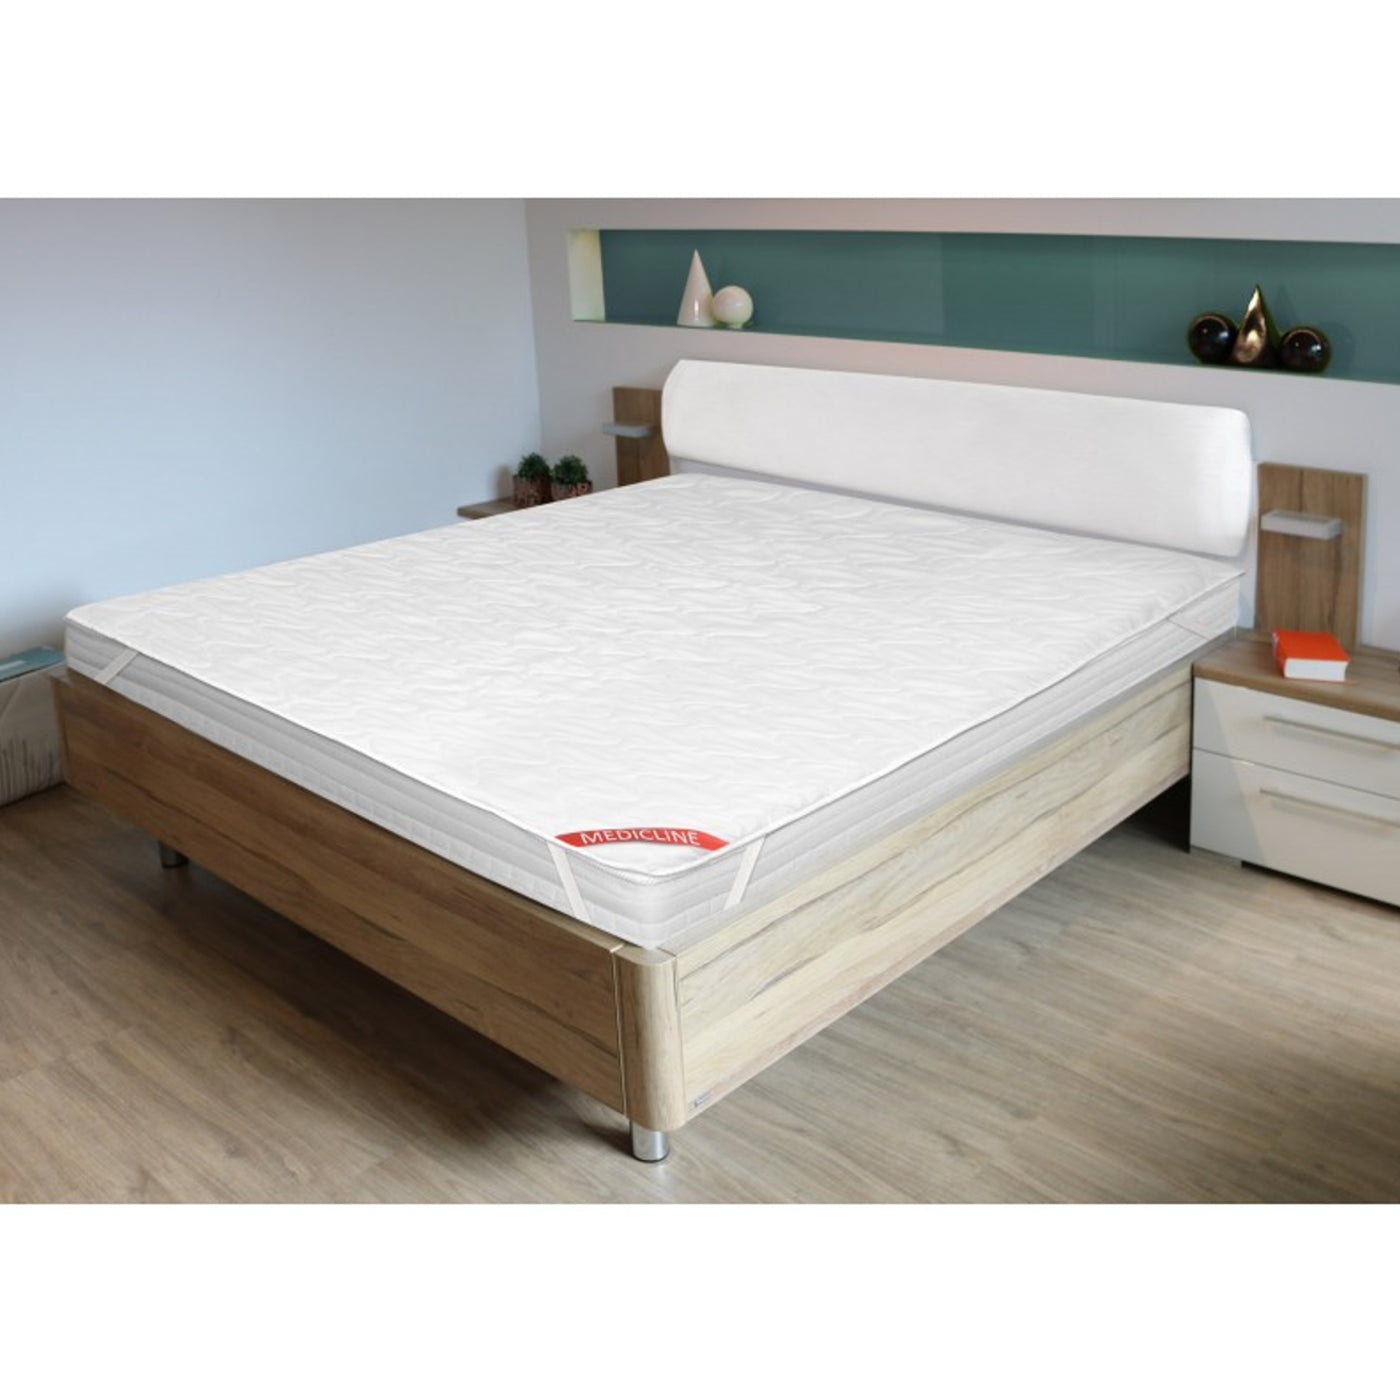 Protector reutilizable para cama con elásticos, 90 x 200 cm